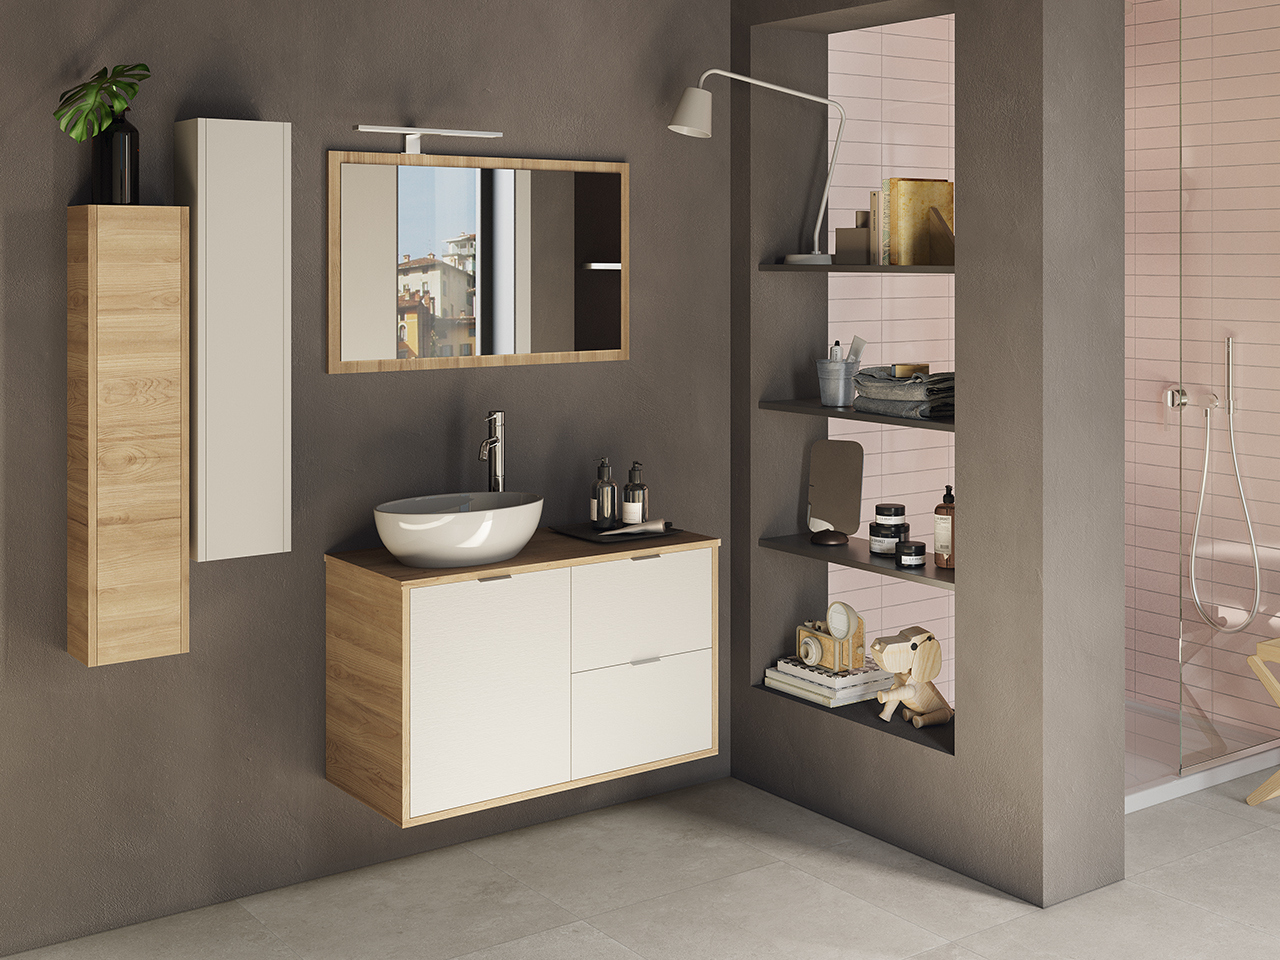 Due diverse finiture – bianco o effetto legno – per rendere più dinamico il design del bagno